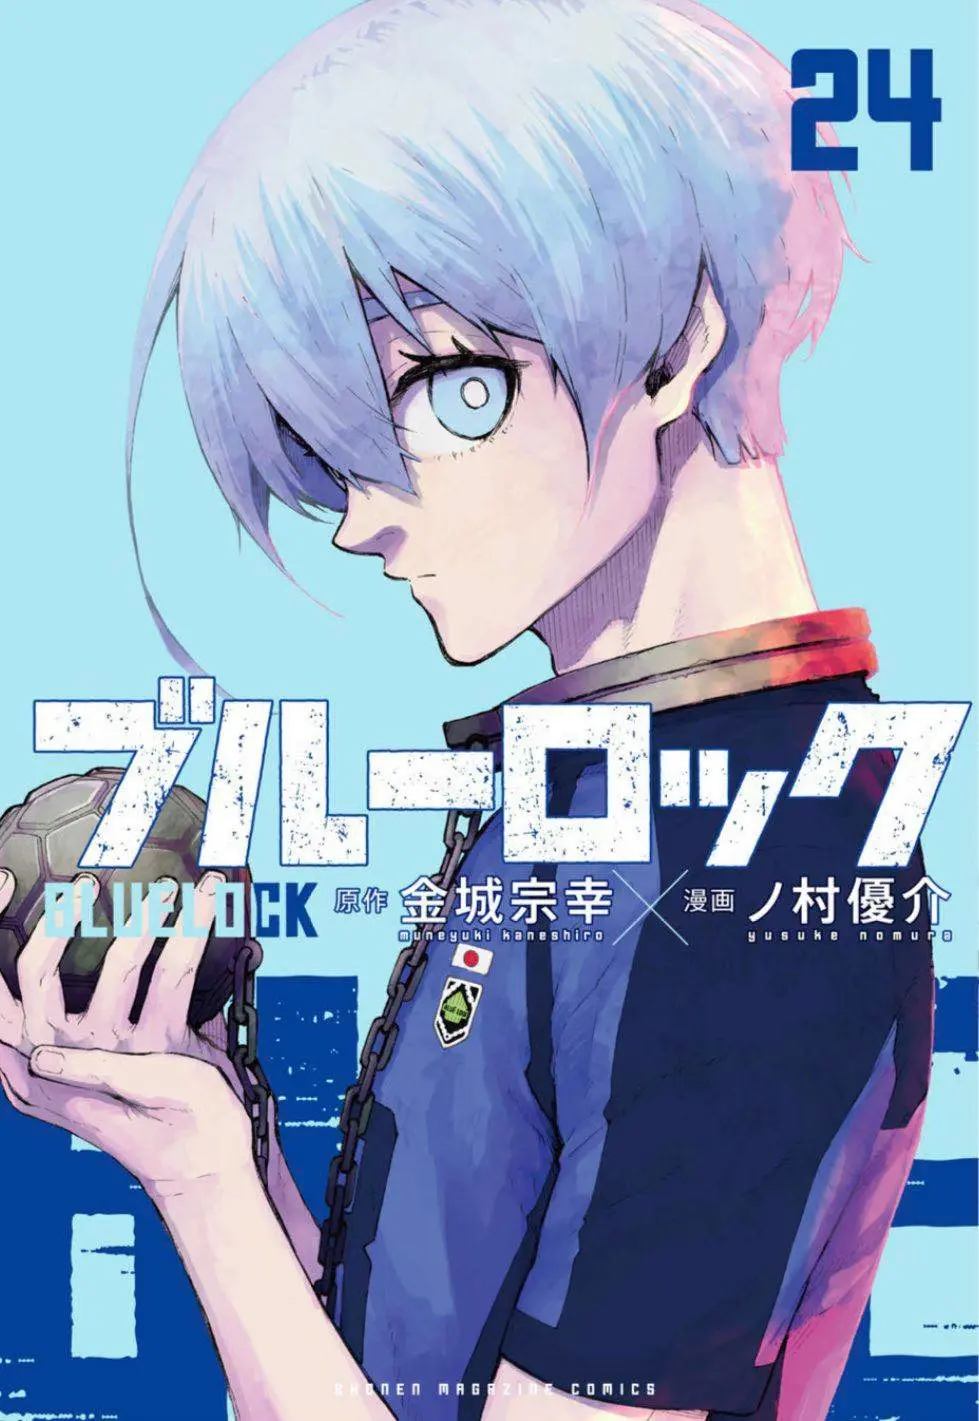 Manga Blue Lock vol.24 (ブルーロック(24) (講談社コミックス))  / Nomura Yuusuke